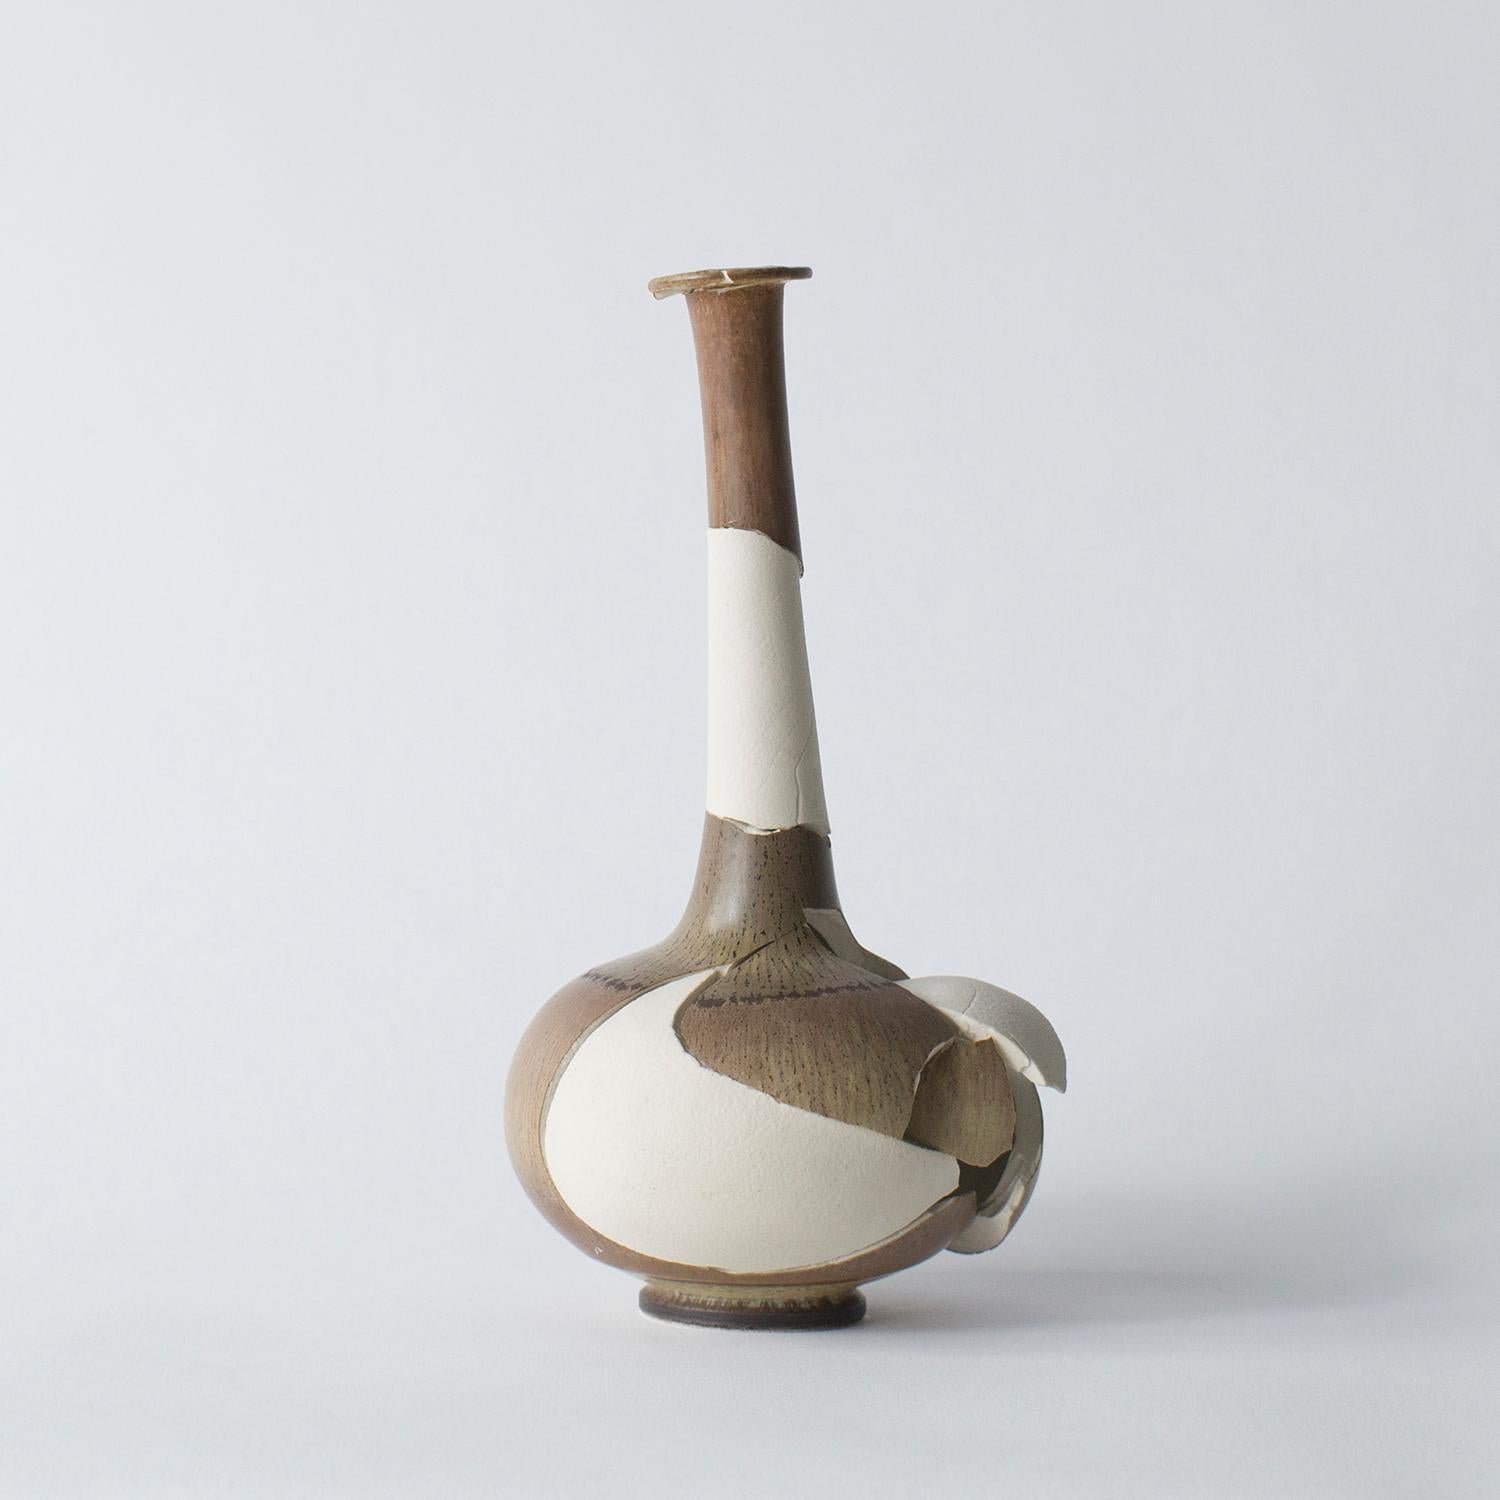 Diese Serie besteht aus einigen Glas- und Keramikarbeiten. Diese Werke sind in Form und Aussehen einzigartig. Norihiko Terayama hat sie aus beschädigten Vasen, Kaffeetassen und so weiter geschaffen. Er beginnt, das beschädigte Objekt in einige